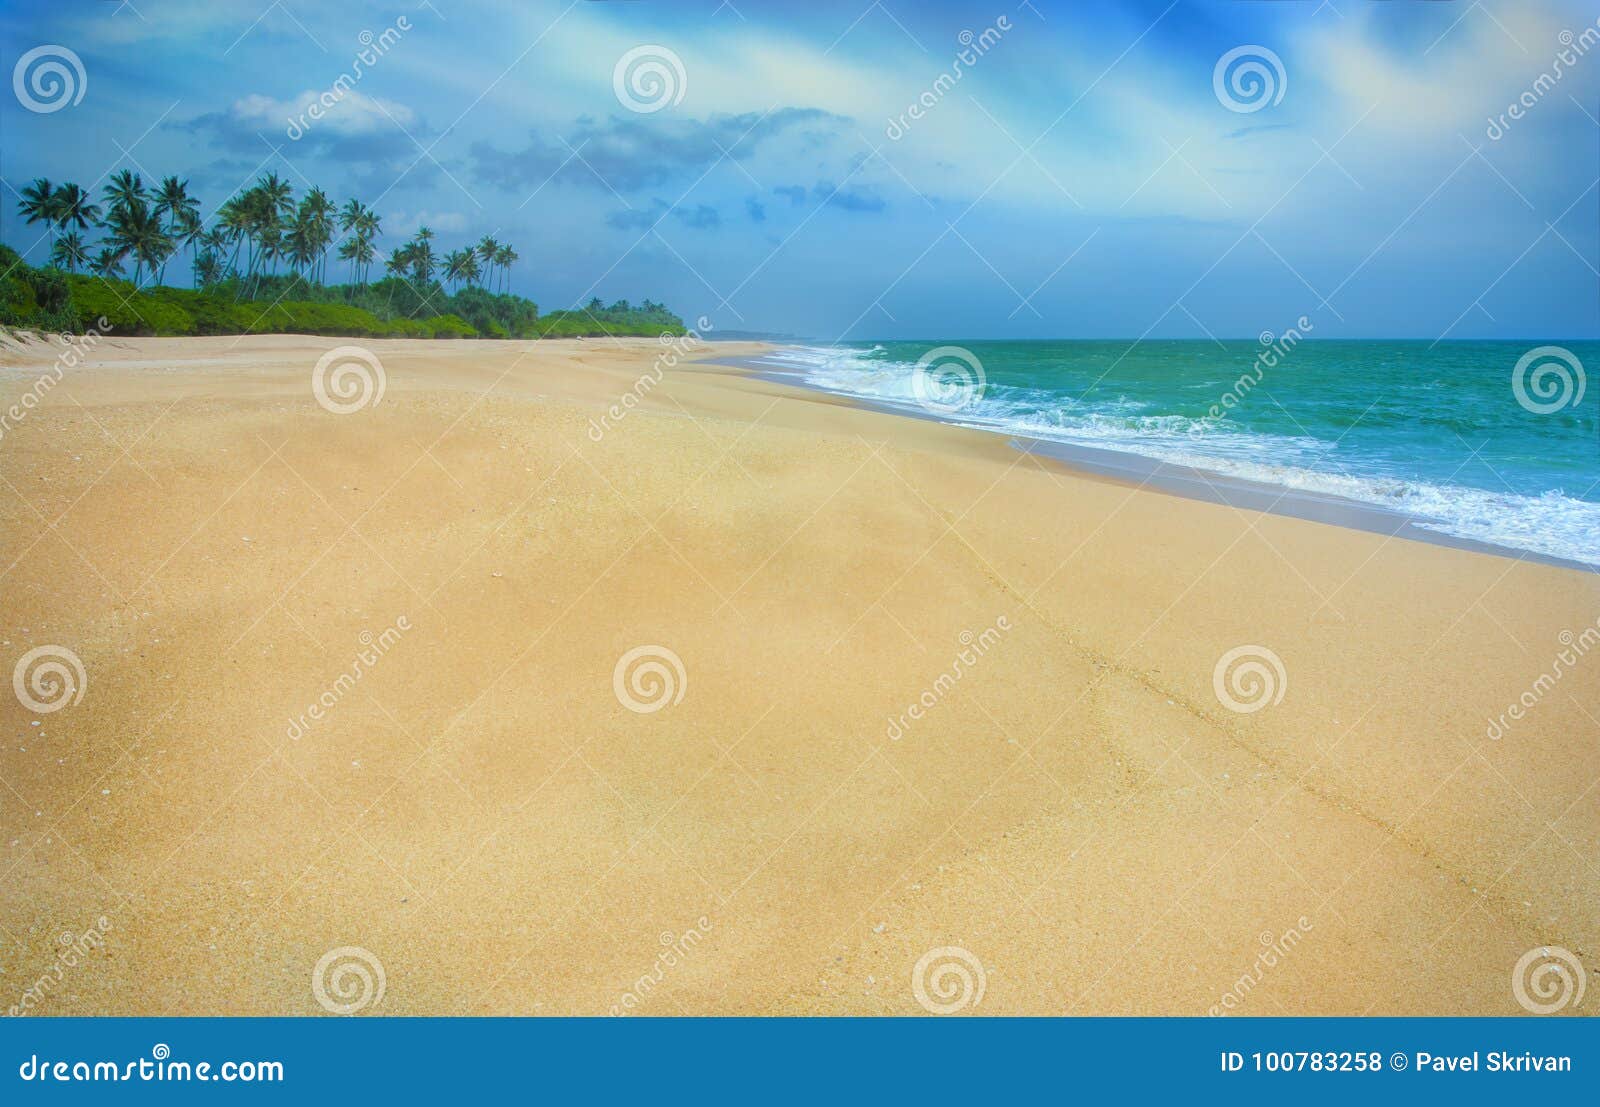 Тропический песчаный пляж на Шри-Ланке. Волна моря на пляже песка море пляжа тропическое Пляж Шри-Ланка рая идилличный Красивый ландшафт Шри-Ланки Экзотический ландшафт воды с облаками на горизонте лето праздников семьи счастливое ваше Берег океана в вечере как предпосылка перемещения природы